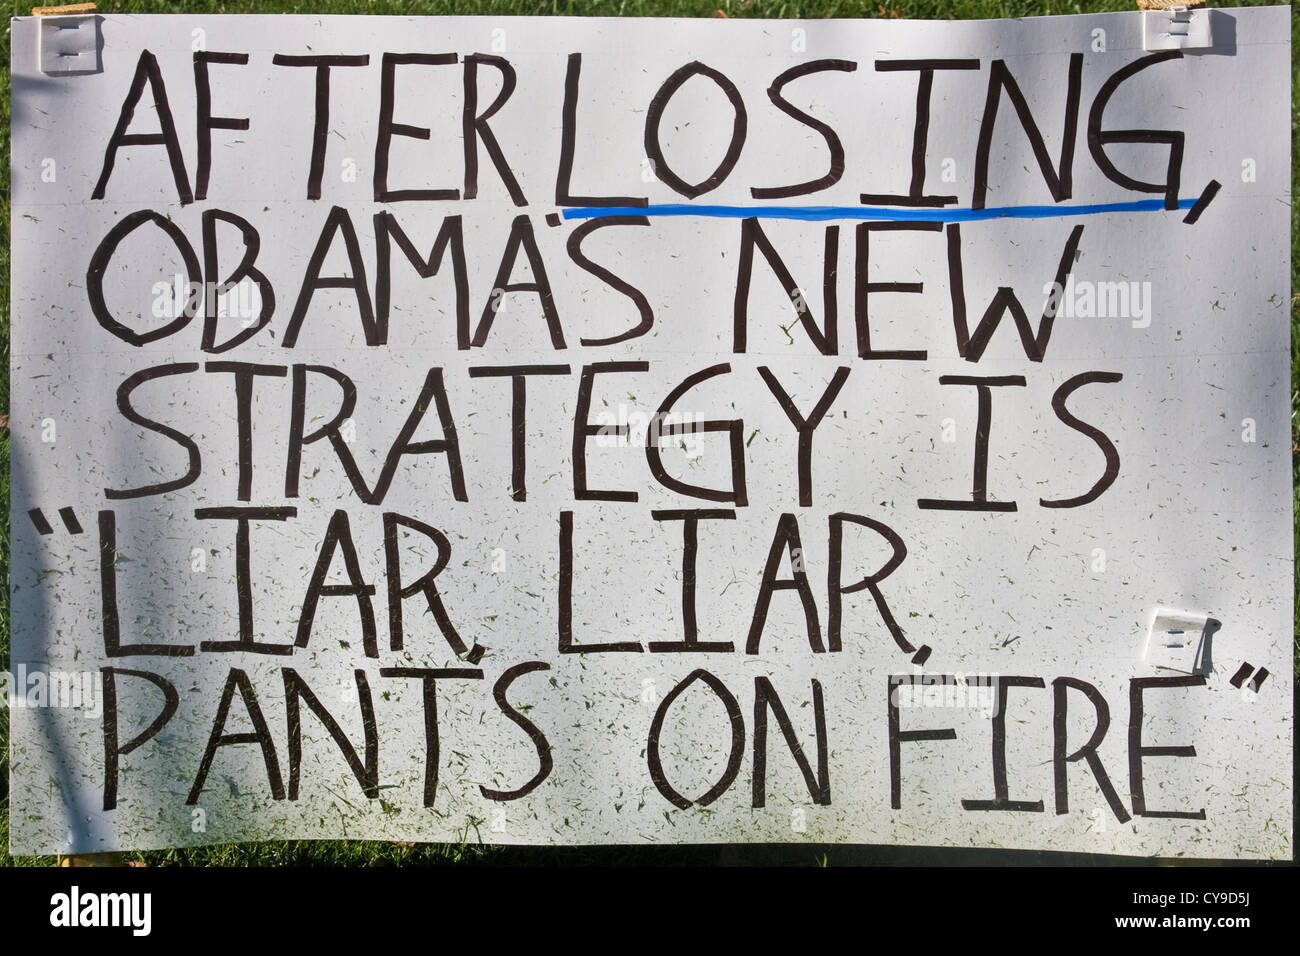 hausgemachte politischen Rasen 2012 anmelden unter Angabe "nach zu verlieren, ist Obamas neuen Strategie" Lügner, Lügner, Hosen in Brand '' Stockfoto